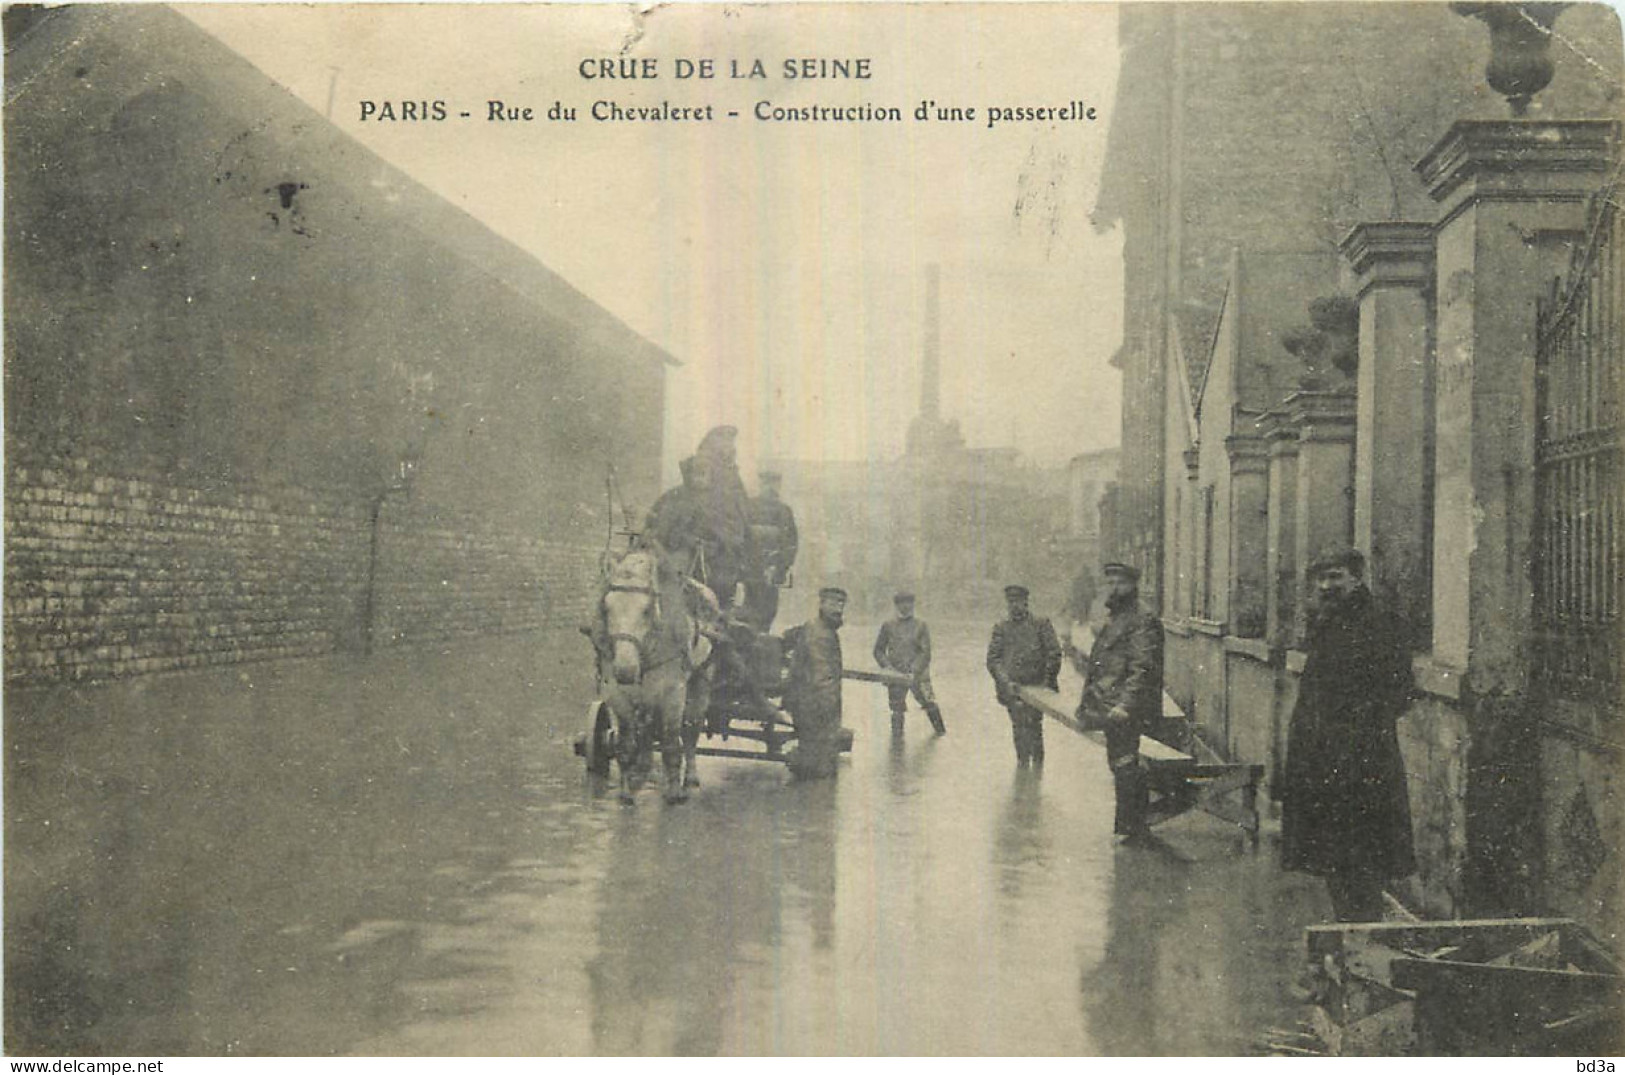 75 - PARIS - CRUE DE LA SEINE - RUE CHEVALERET - CONSTRUCTION D'UNE PASSERELLE - Überschwemmung 1910